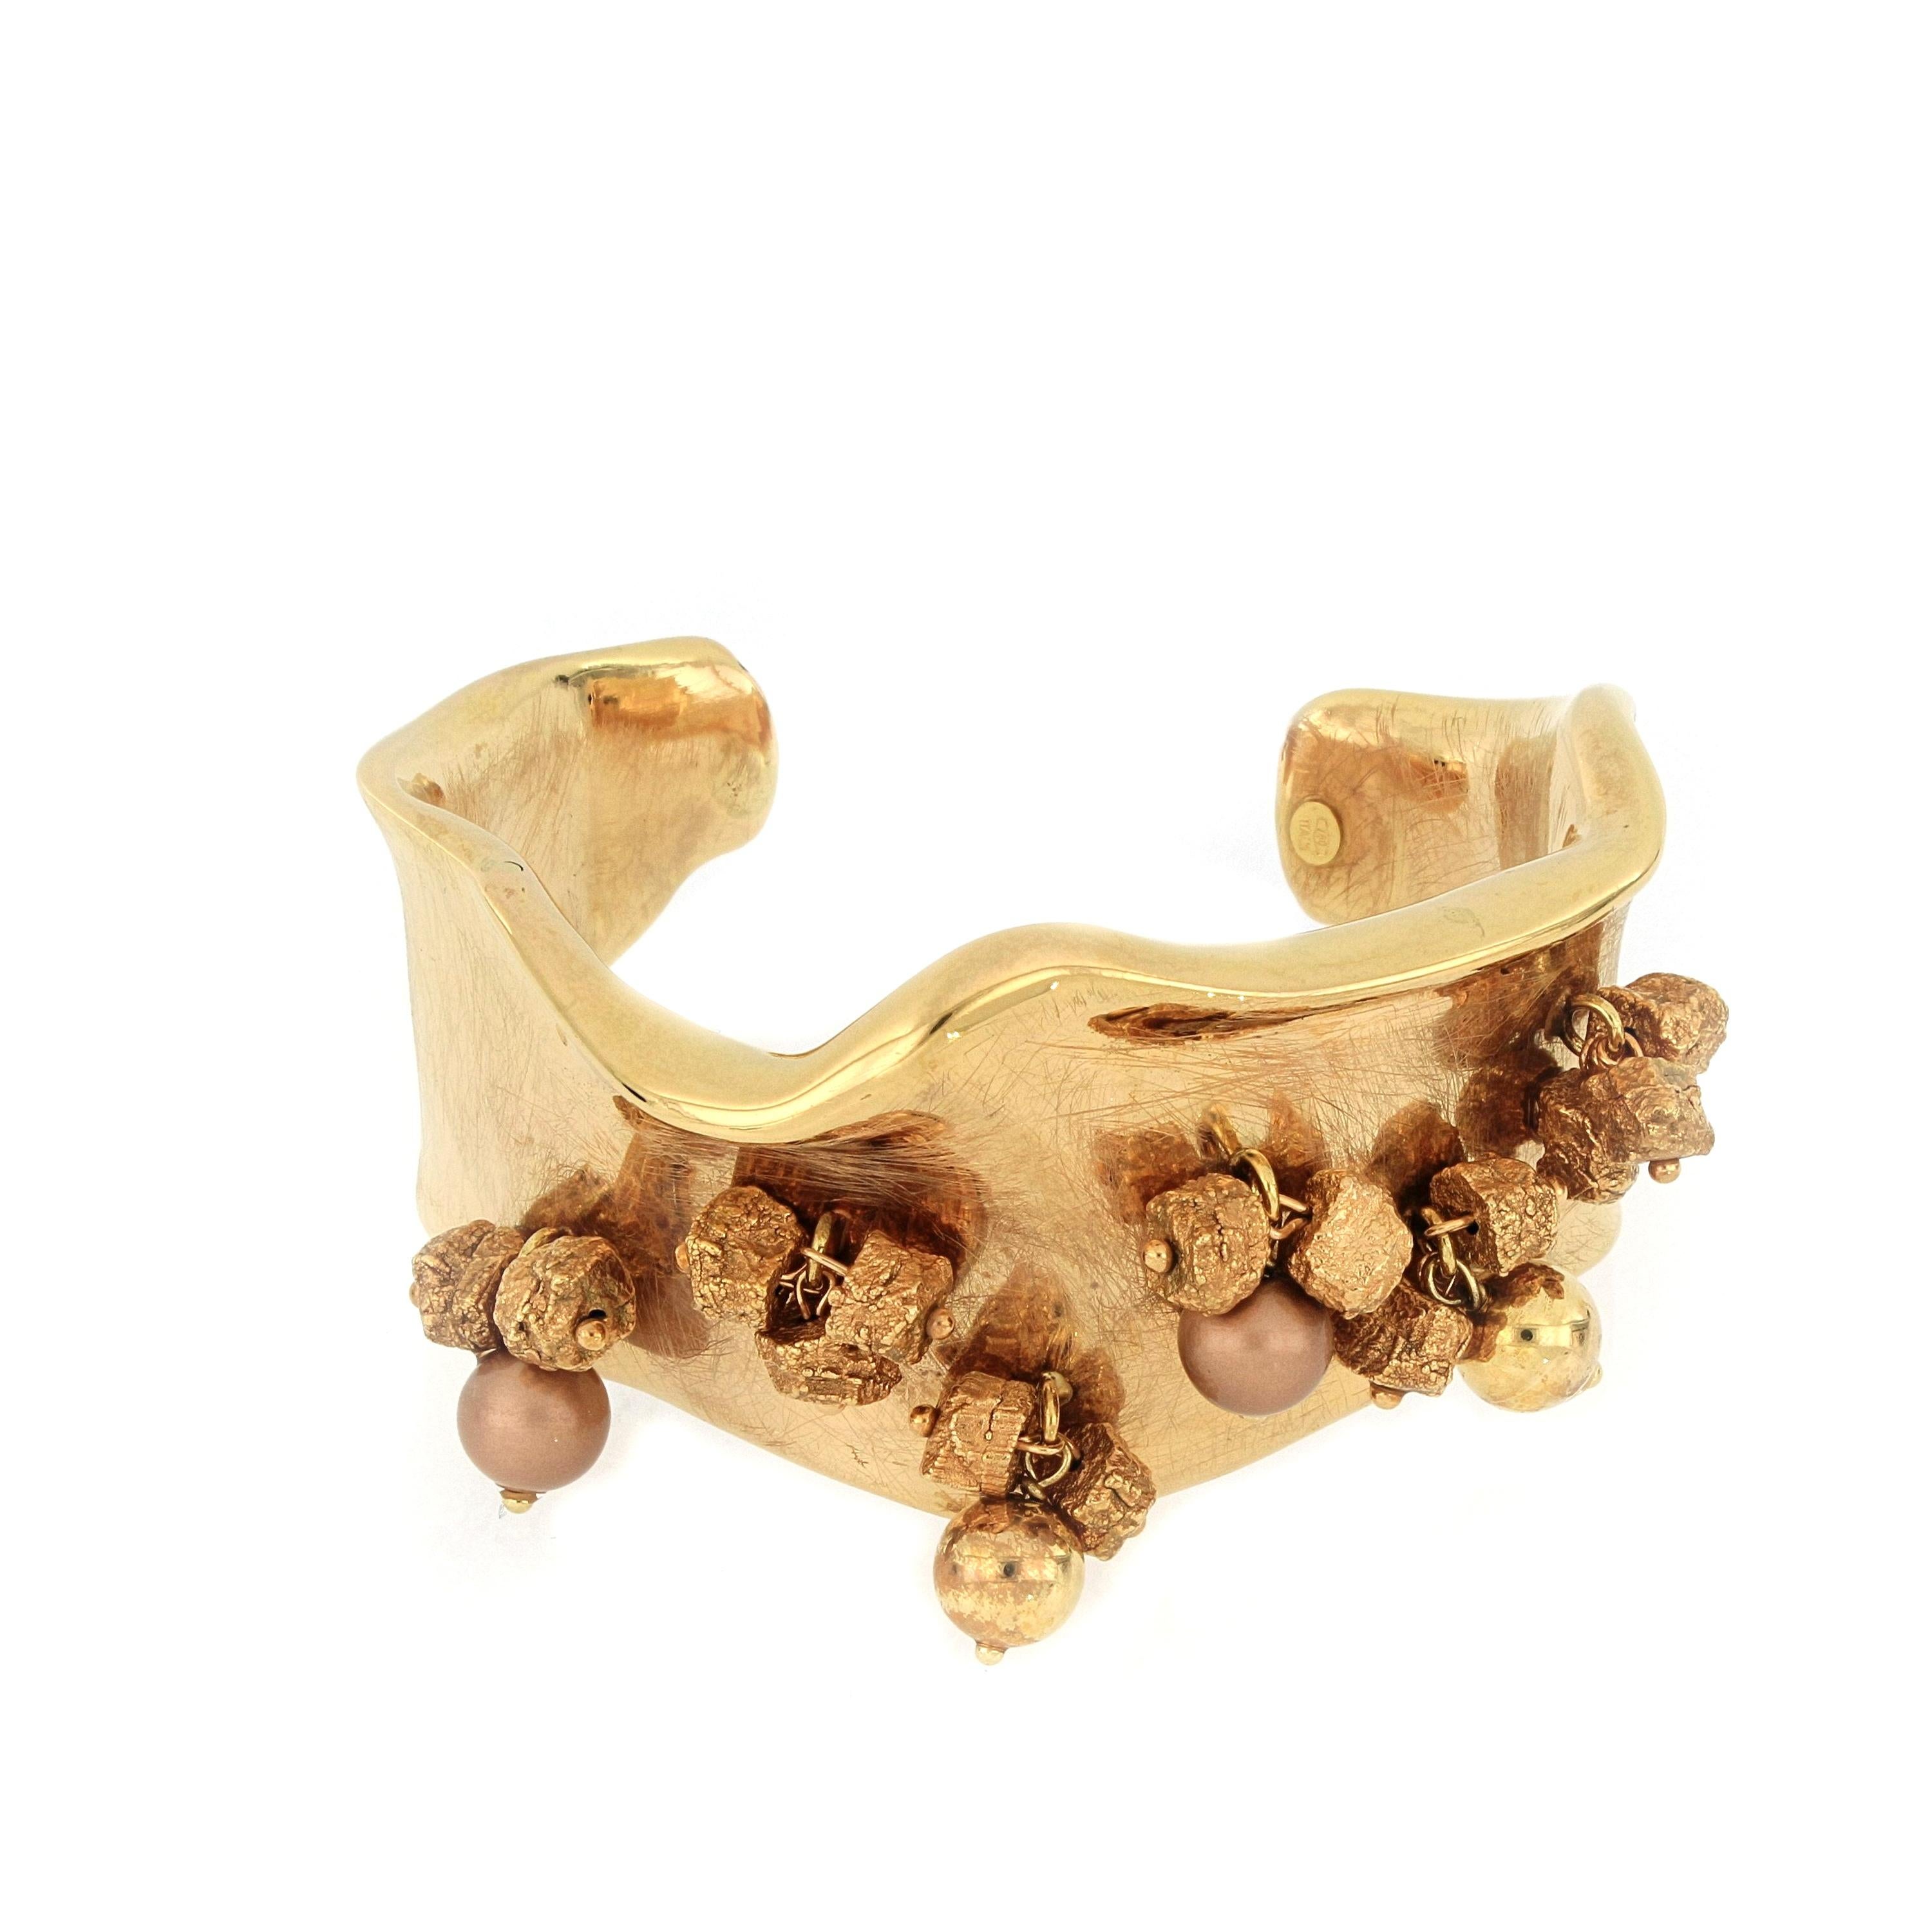 Un bracelet très unique en or rose 18 carats, brossé et dépoli  avec un savoir-faire italien. Les bracelets sont suspendus avec des pièces d'or de différentes formes, élégantes et stylées.
O'Che 1867 est née il y a un siècle et demi à Macao. La